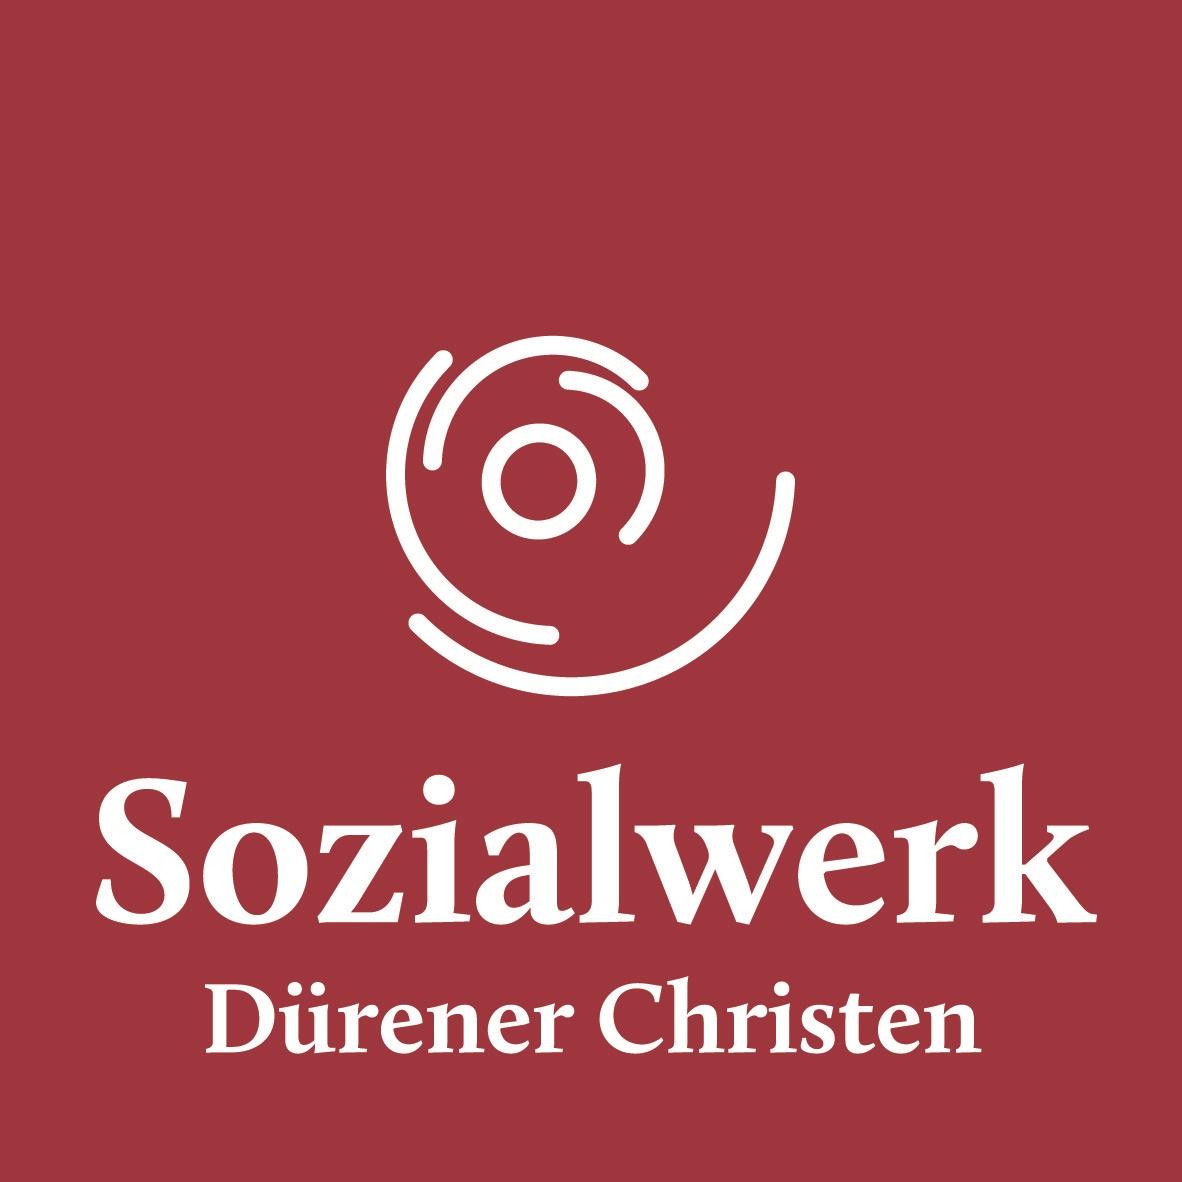 Sozialwerk Dürener Christen (c) Sozialwerk Dürener Christen